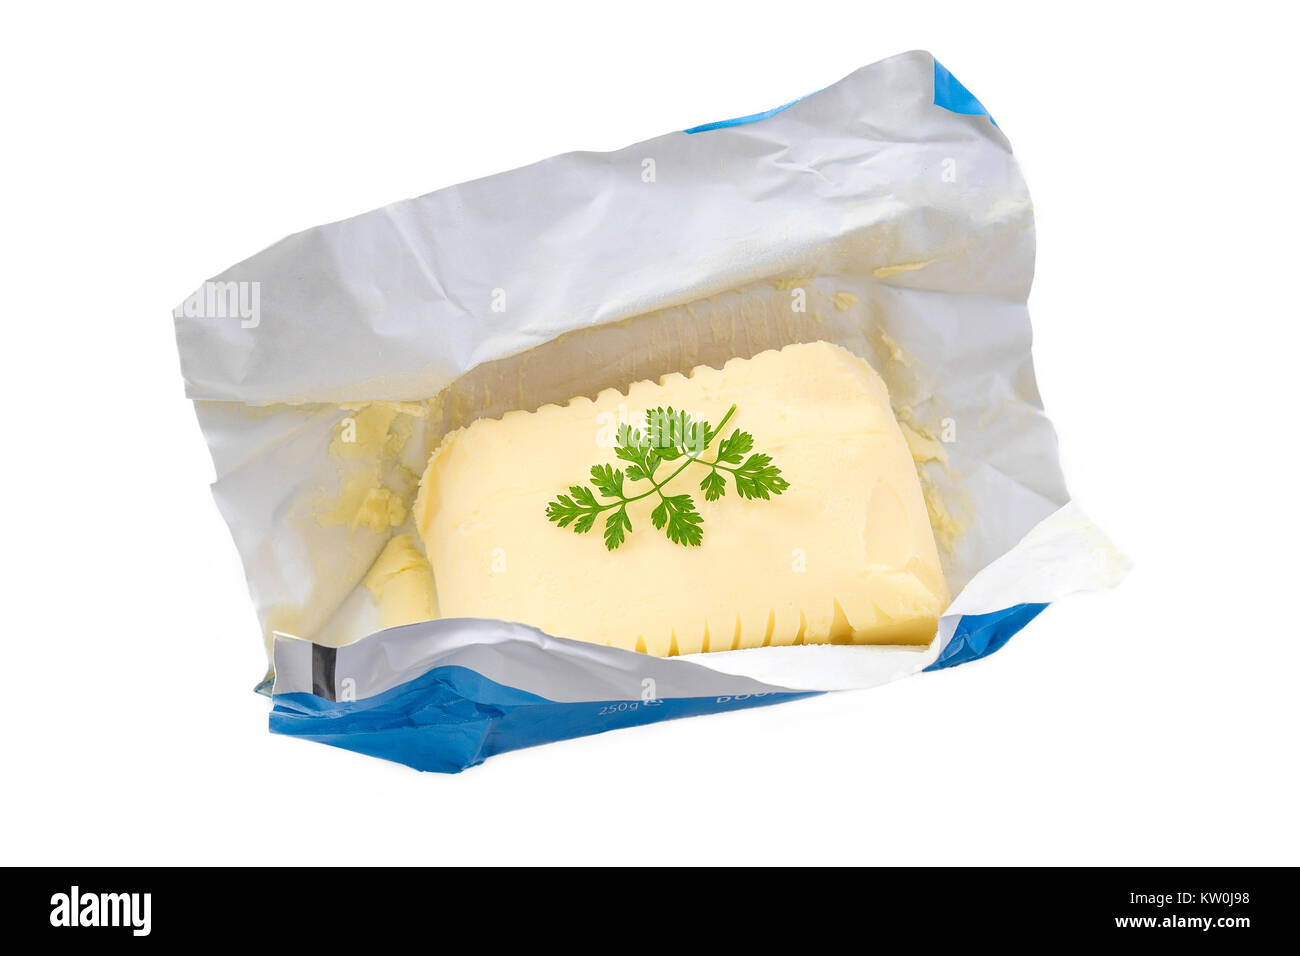 In der Nähe der geöffneten Packung Margarine oder vegetarische Butter auf weißem backgraund. Stockfoto